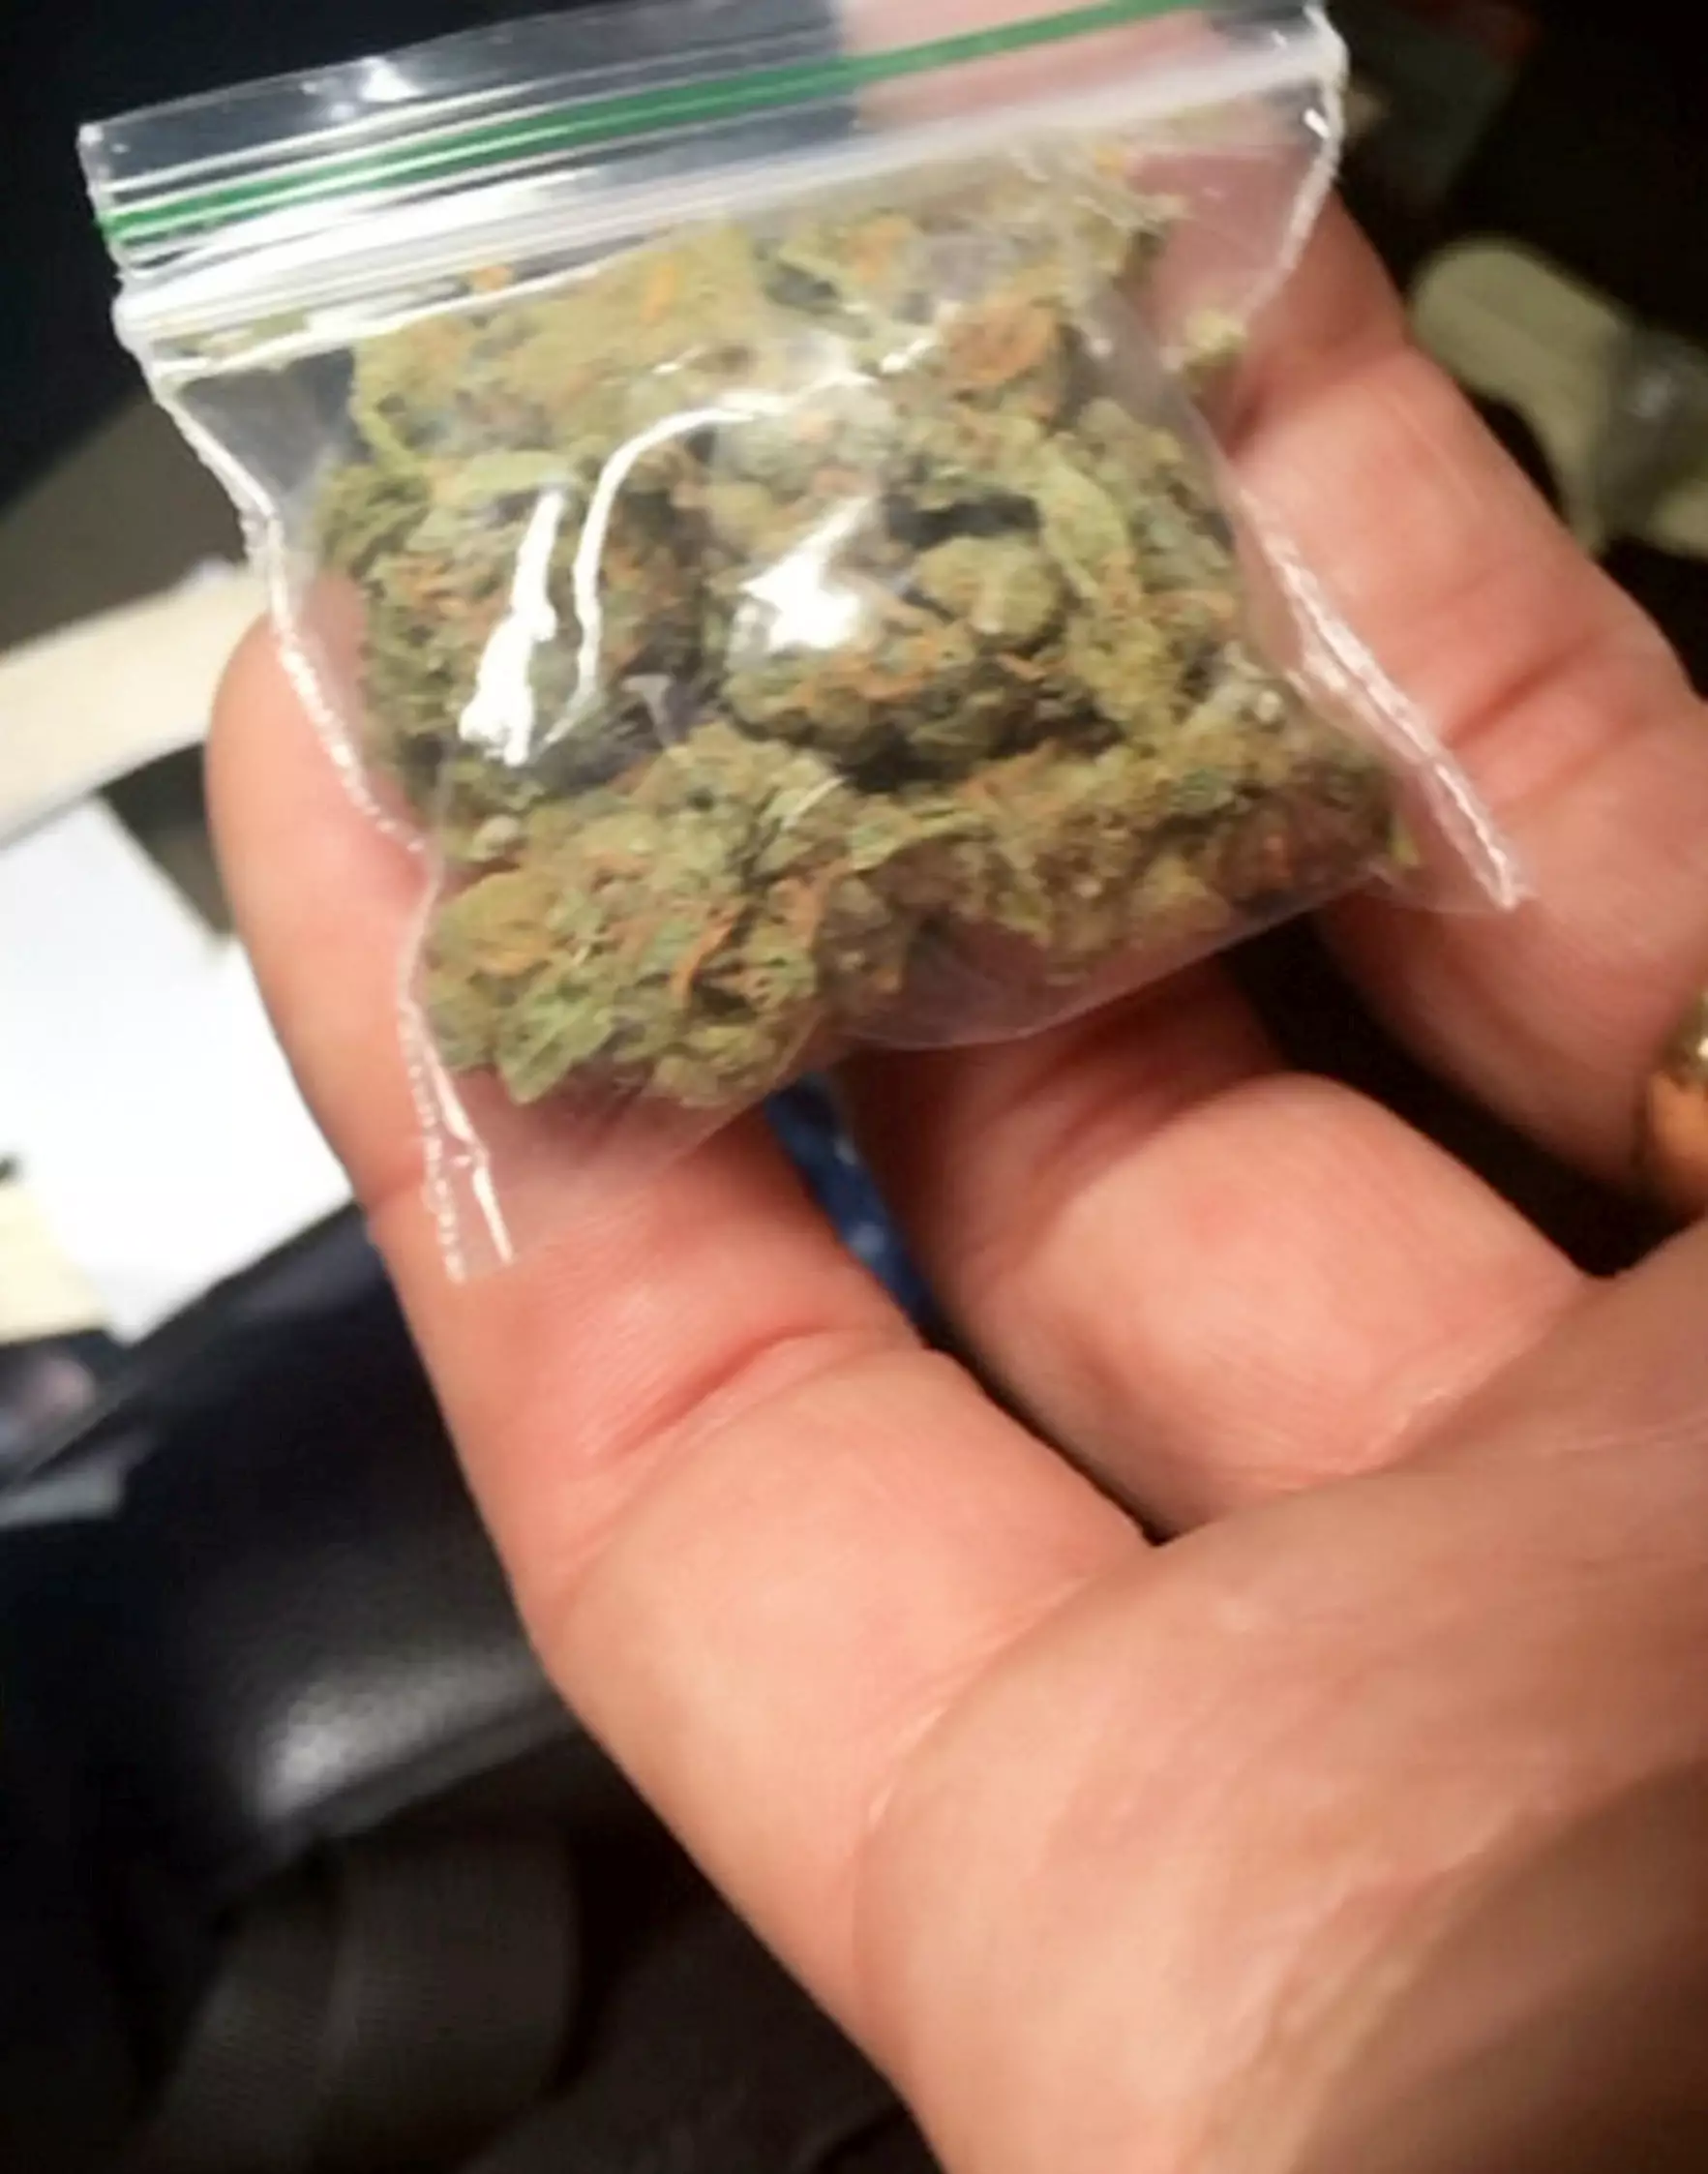 Cannabis found in car